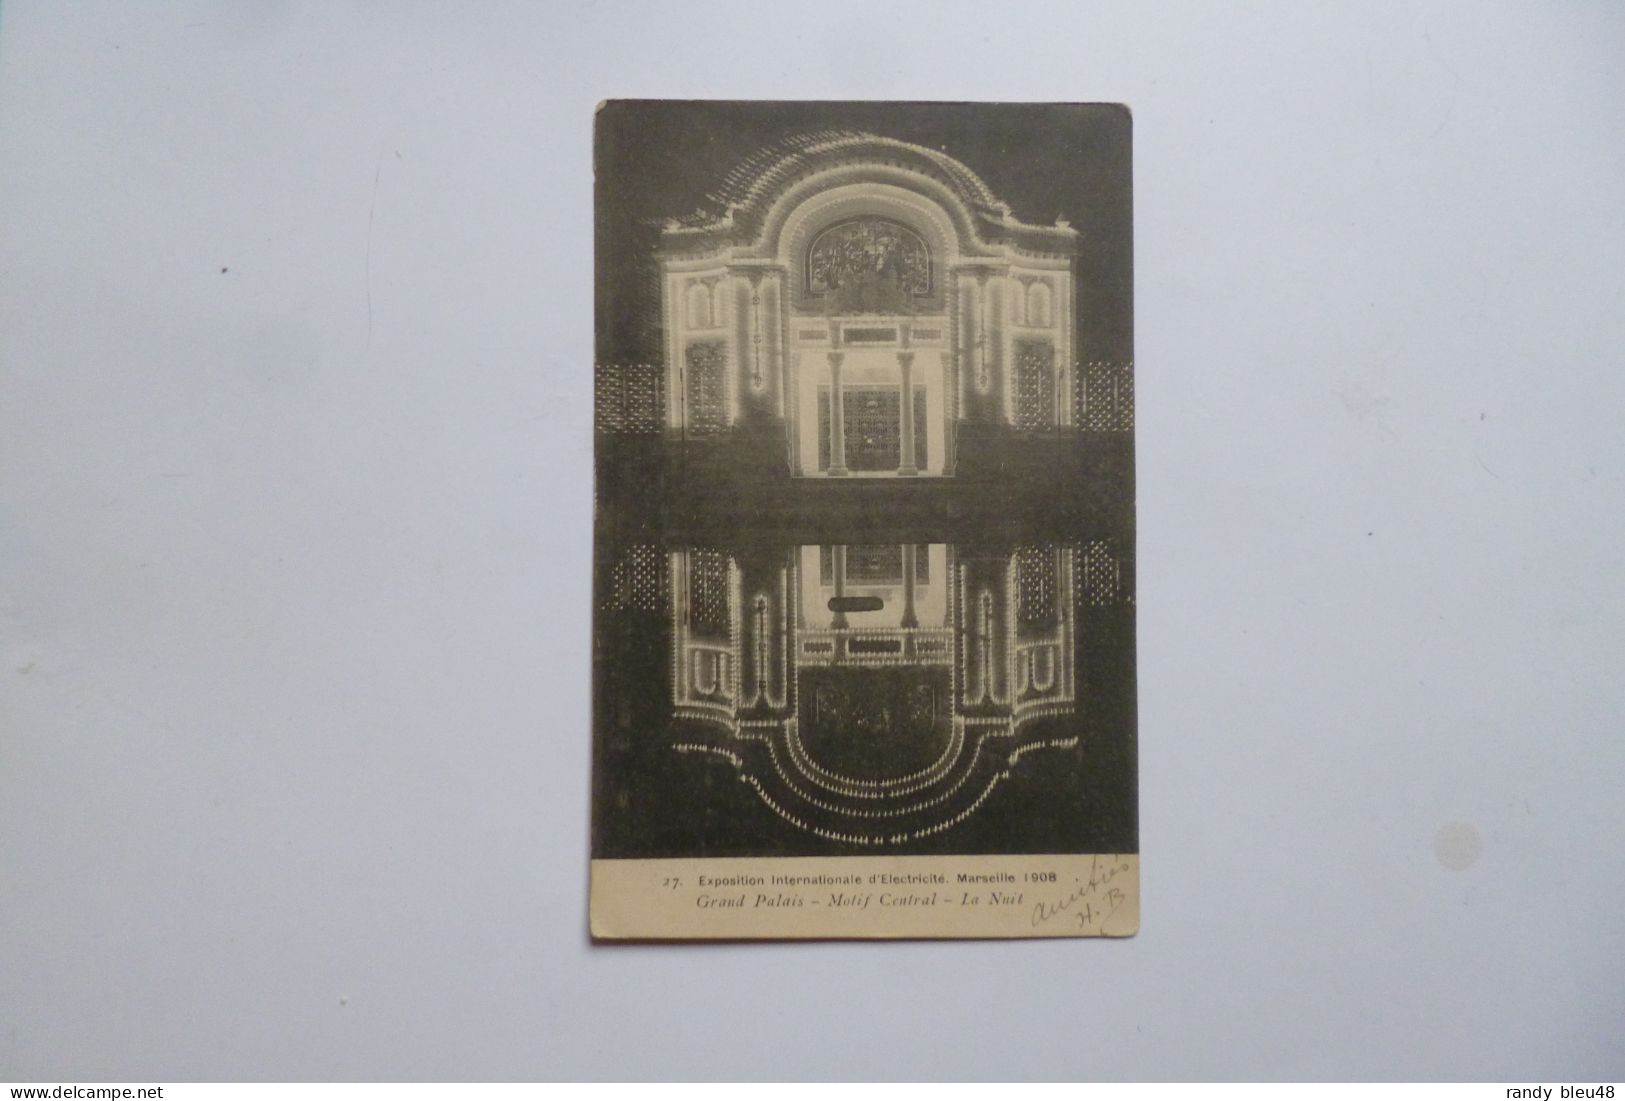 MARSEILLE  -  Exposition 1908  -  Grand Palais   -  Destinataire ANSACQ Par Mony  -  Oise - Exposición Internacional De Electricidad 1908 Y Otras